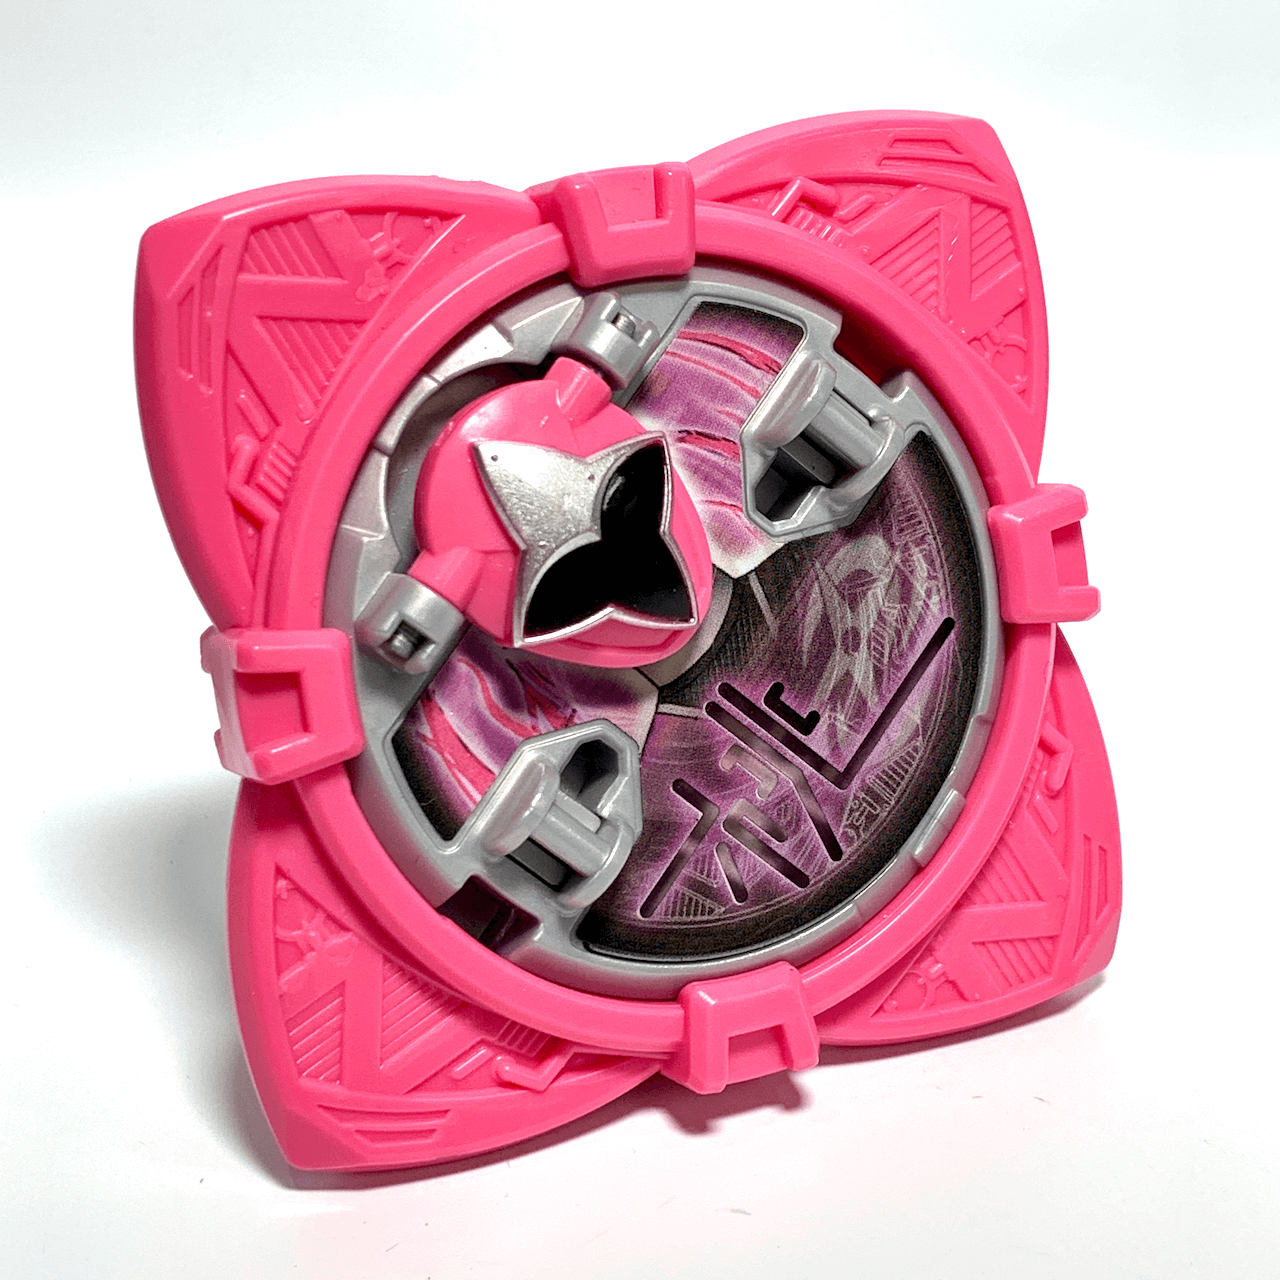 [LOOSE] Ninninger: DX Momo Ninger Shuriken (Pink) | CSTOYS INTERNATIONAL